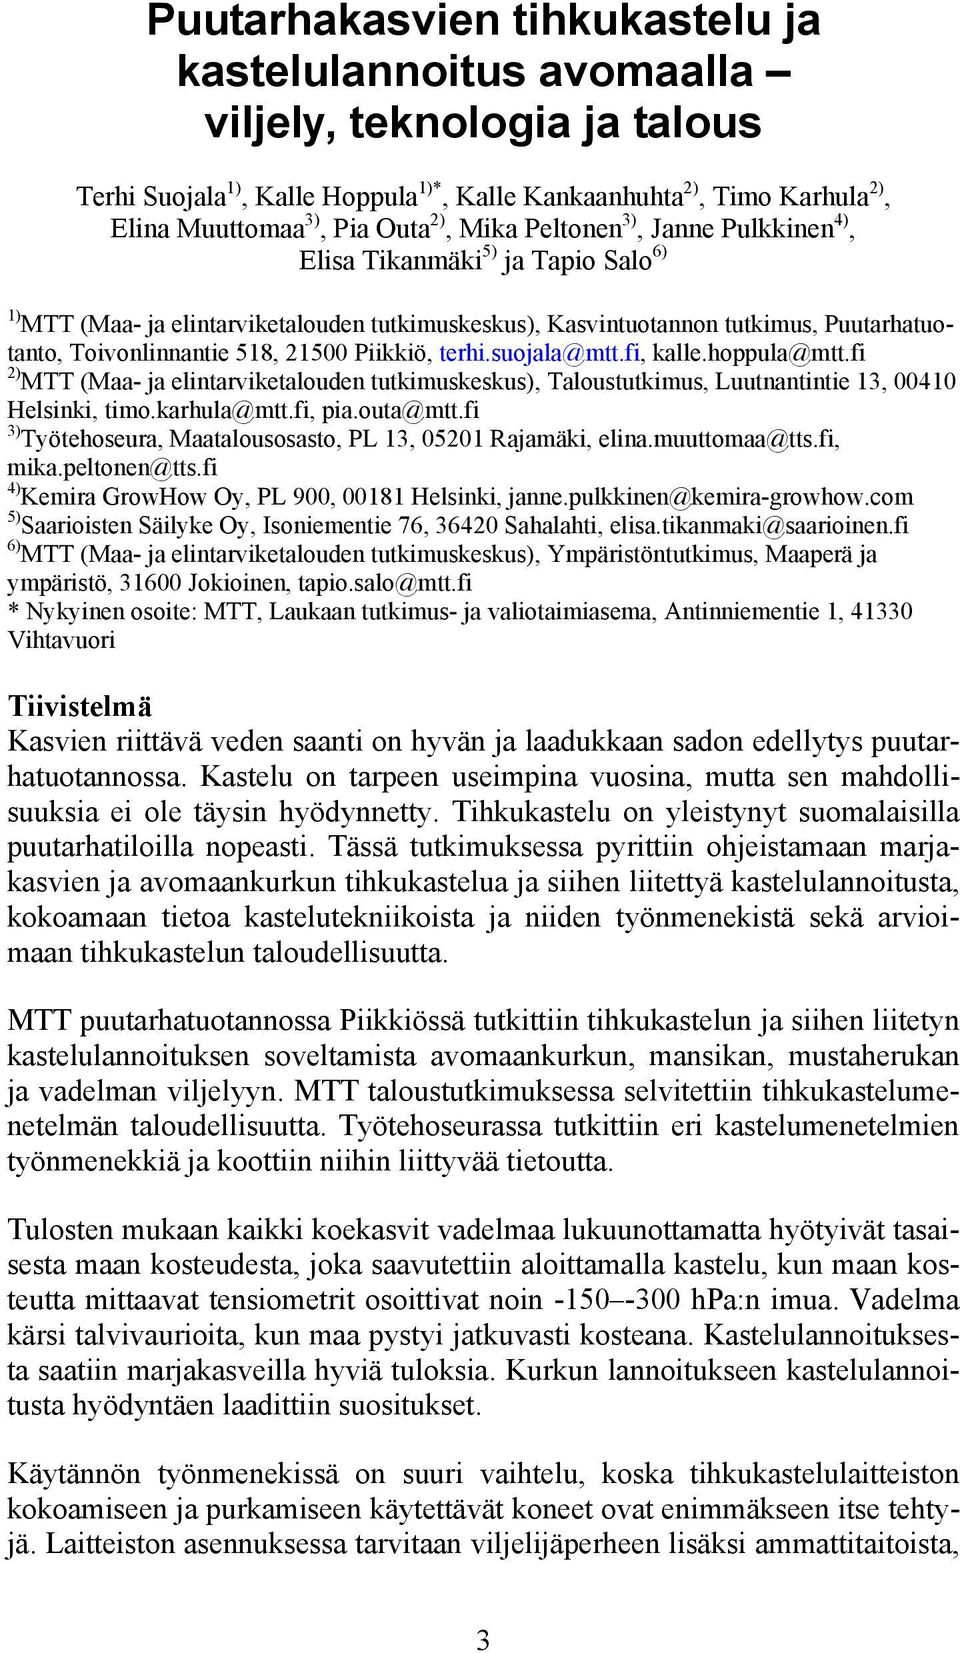 Piikkiö, terhi.suojala@mtt.fi, kalle.hoppula@mtt.fi 2) MTT (Maa- ja elintarviketalouden tutkimuskeskus), Taloustutkimus, Luutnantintie 13, 00410 Helsinki, timo.karhula@mtt.fi, pia.outa@mtt.